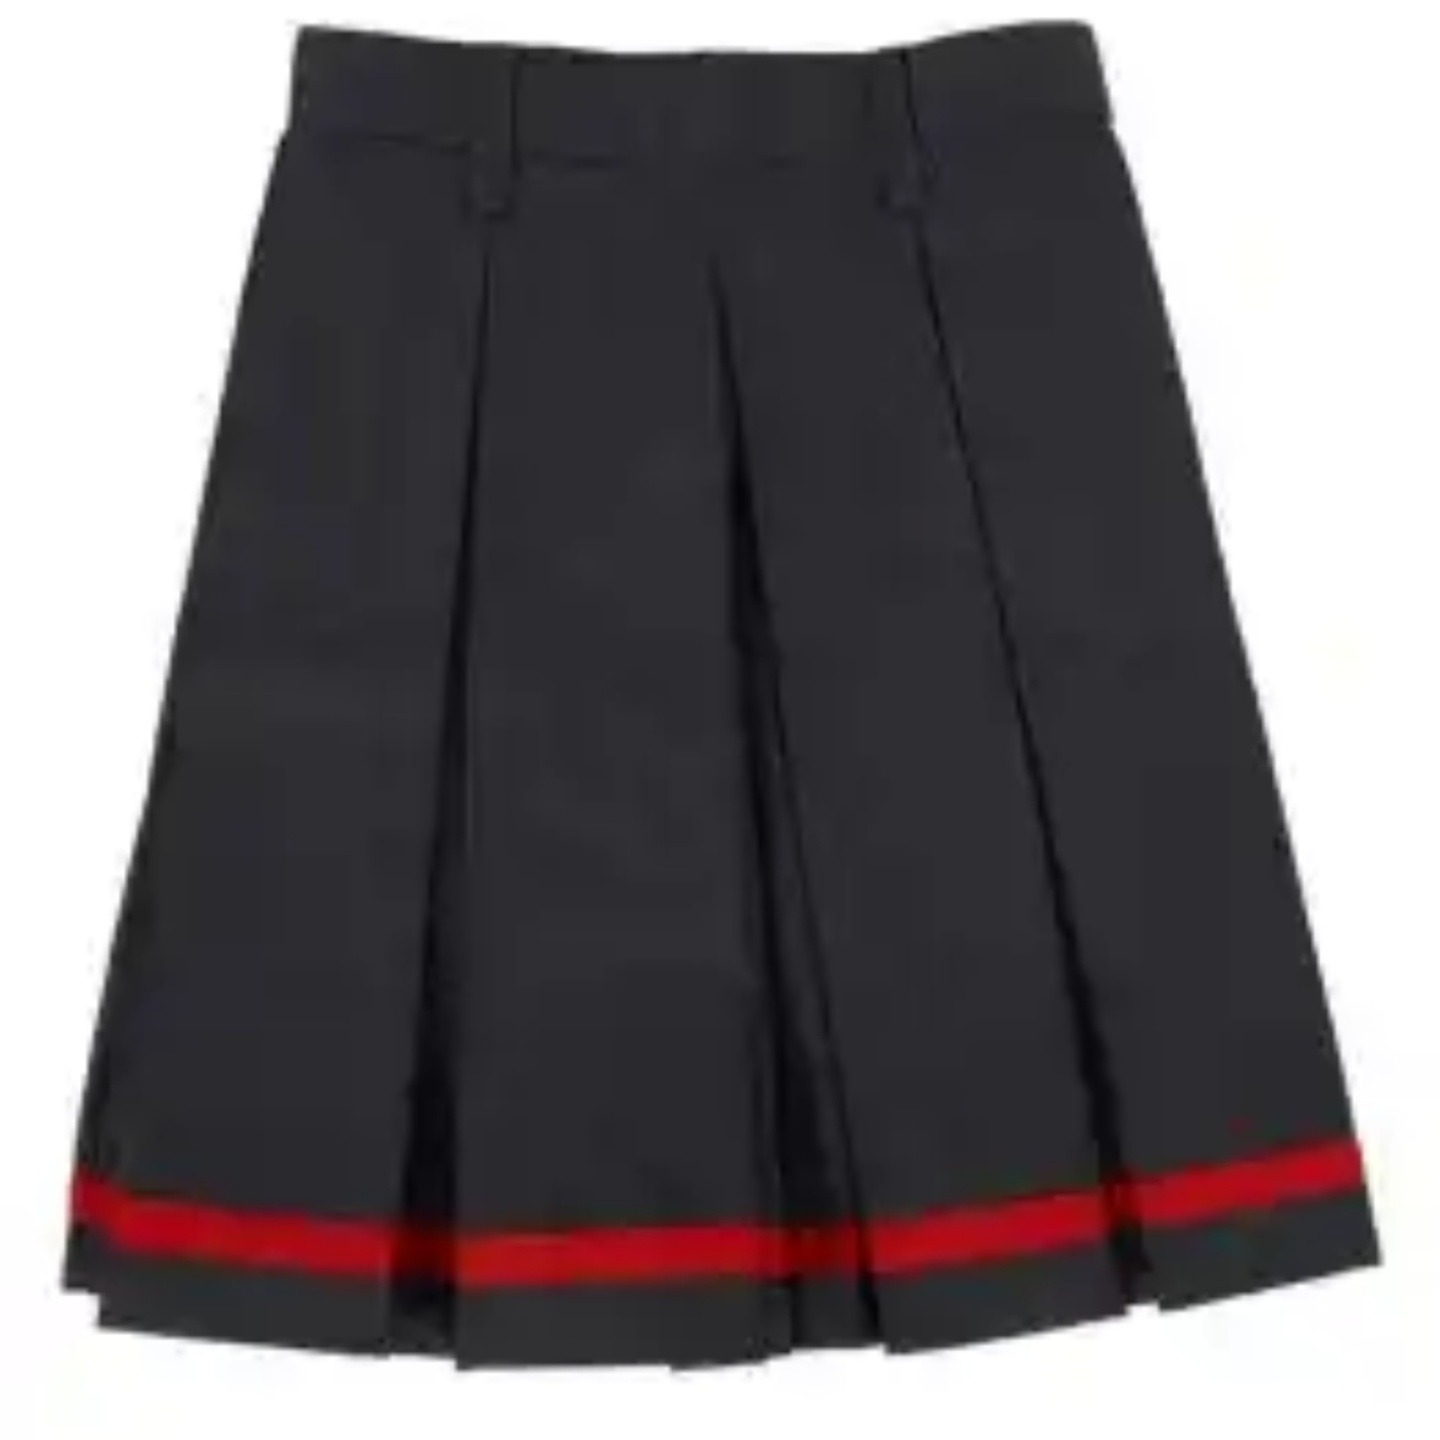 DIvided Skirt